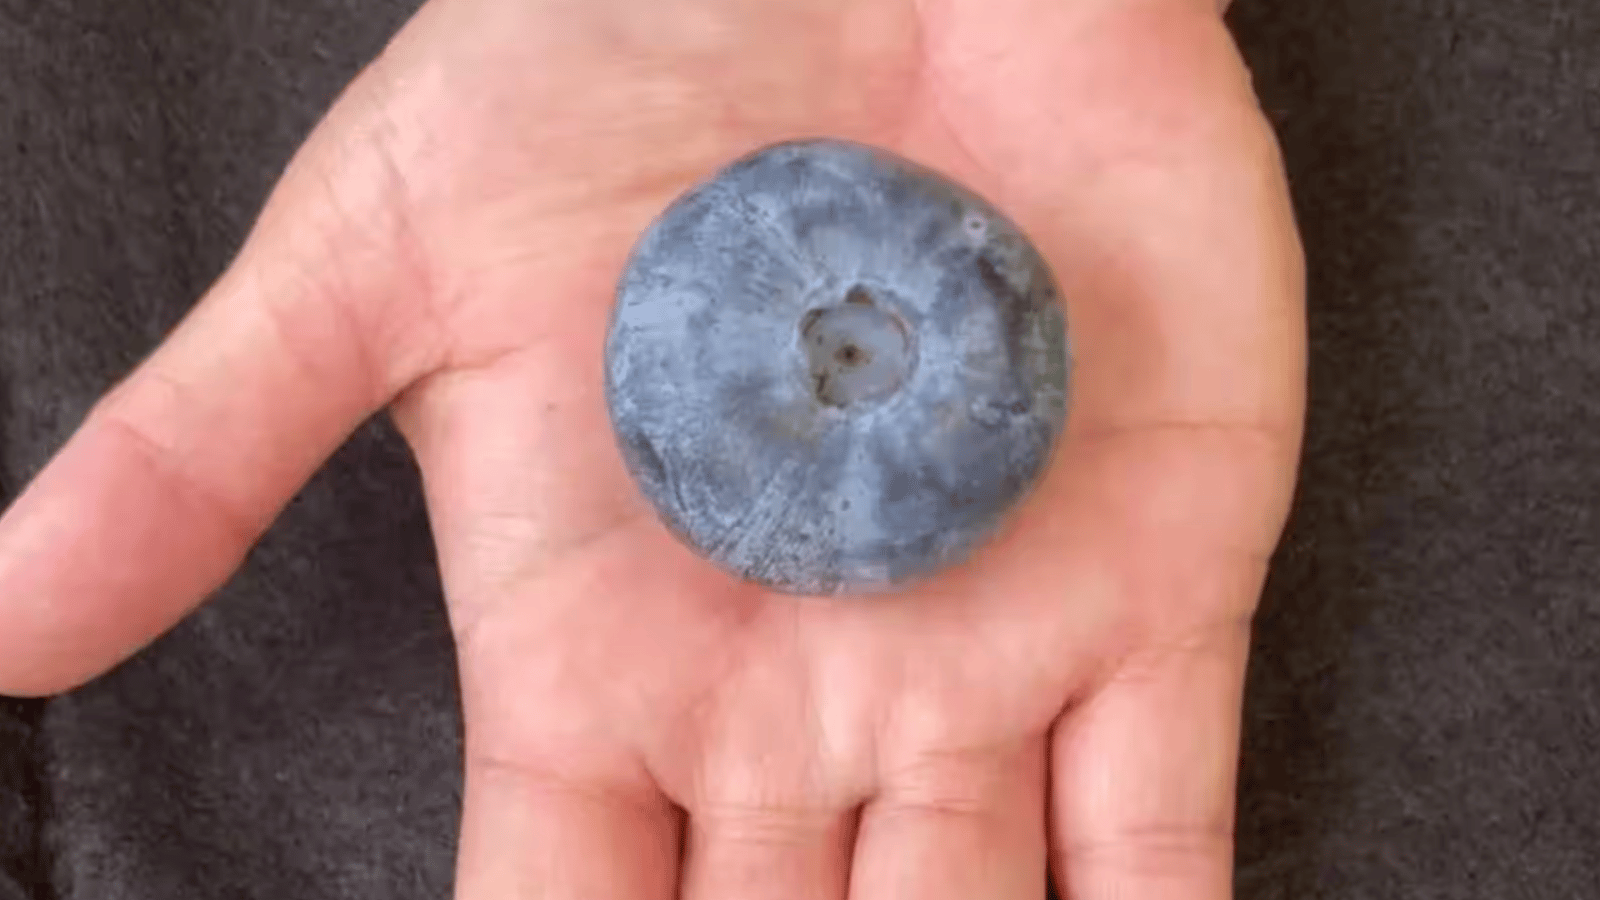 Un bleuet de la taille d'une balle de golf s'inscrit dans les records mondiaux Guinness